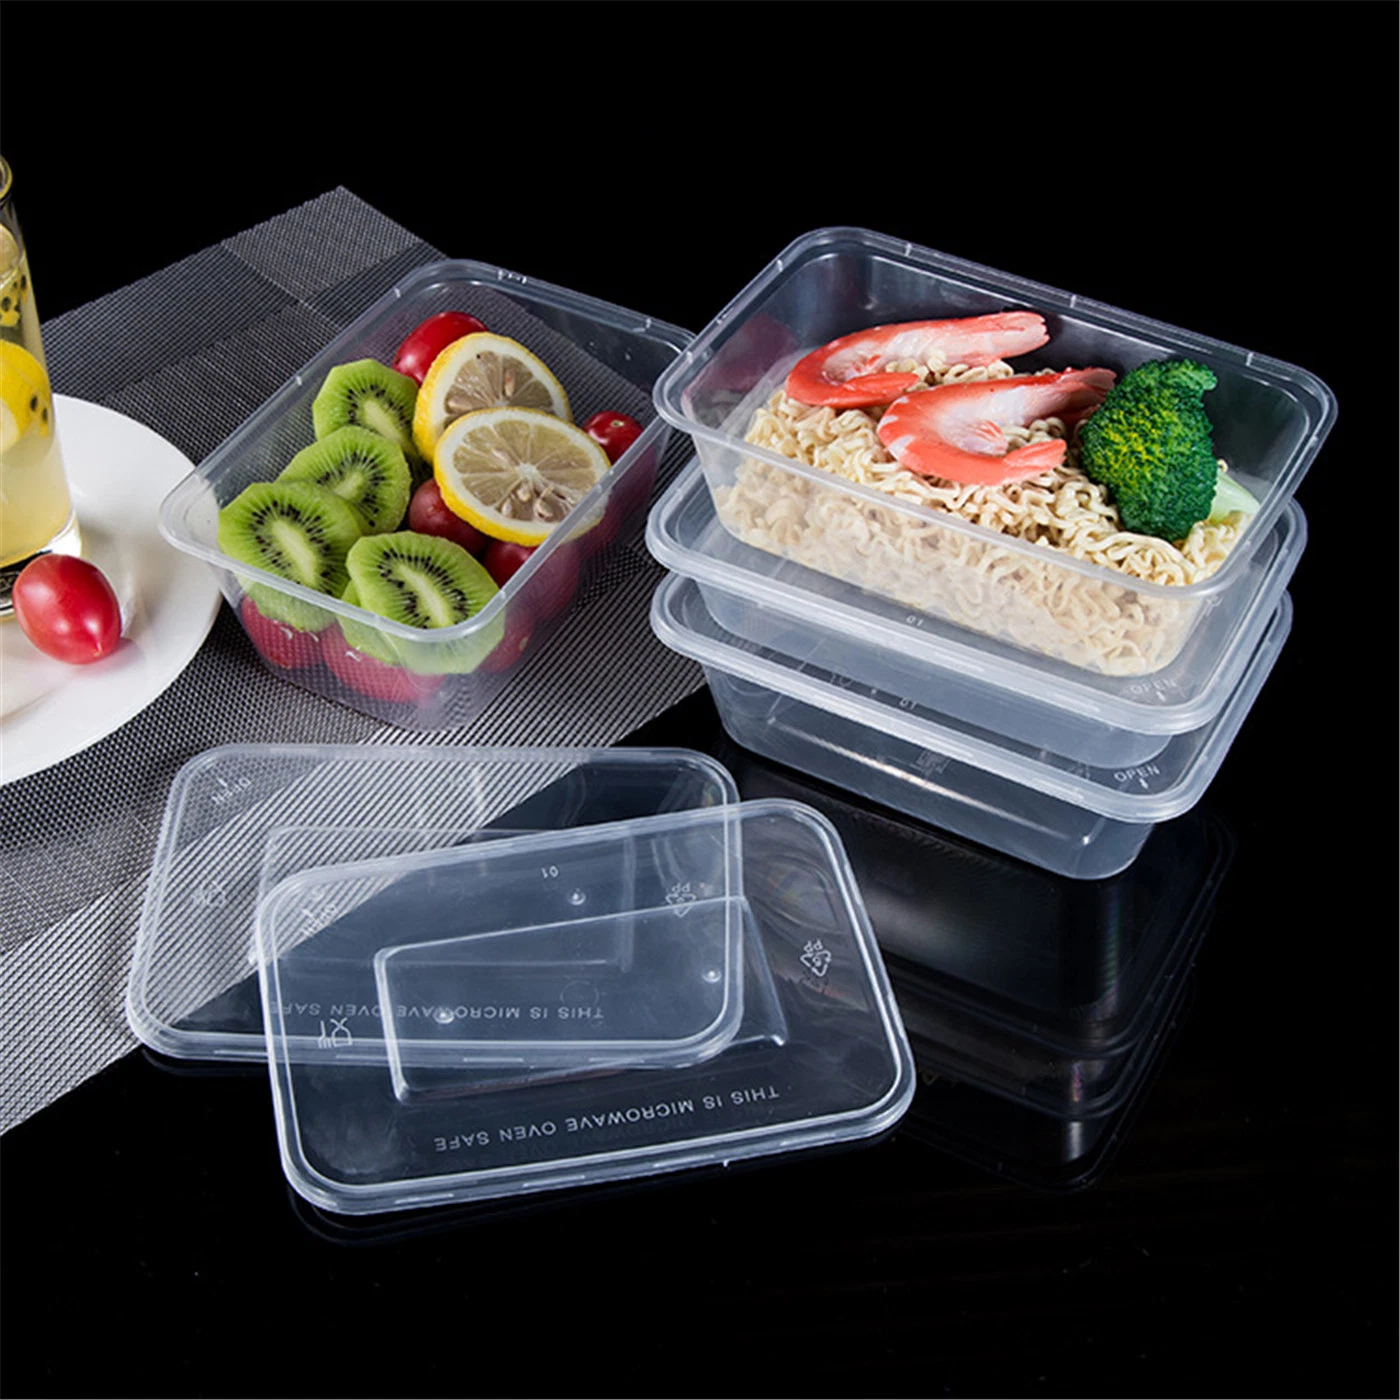 32 Oz. Récipients de préparation de repas ronds réutilisables avec couvercle récipients jetables en plastique pour l'entreposage des aliments bols de préparation de repas sans BPA-Michow